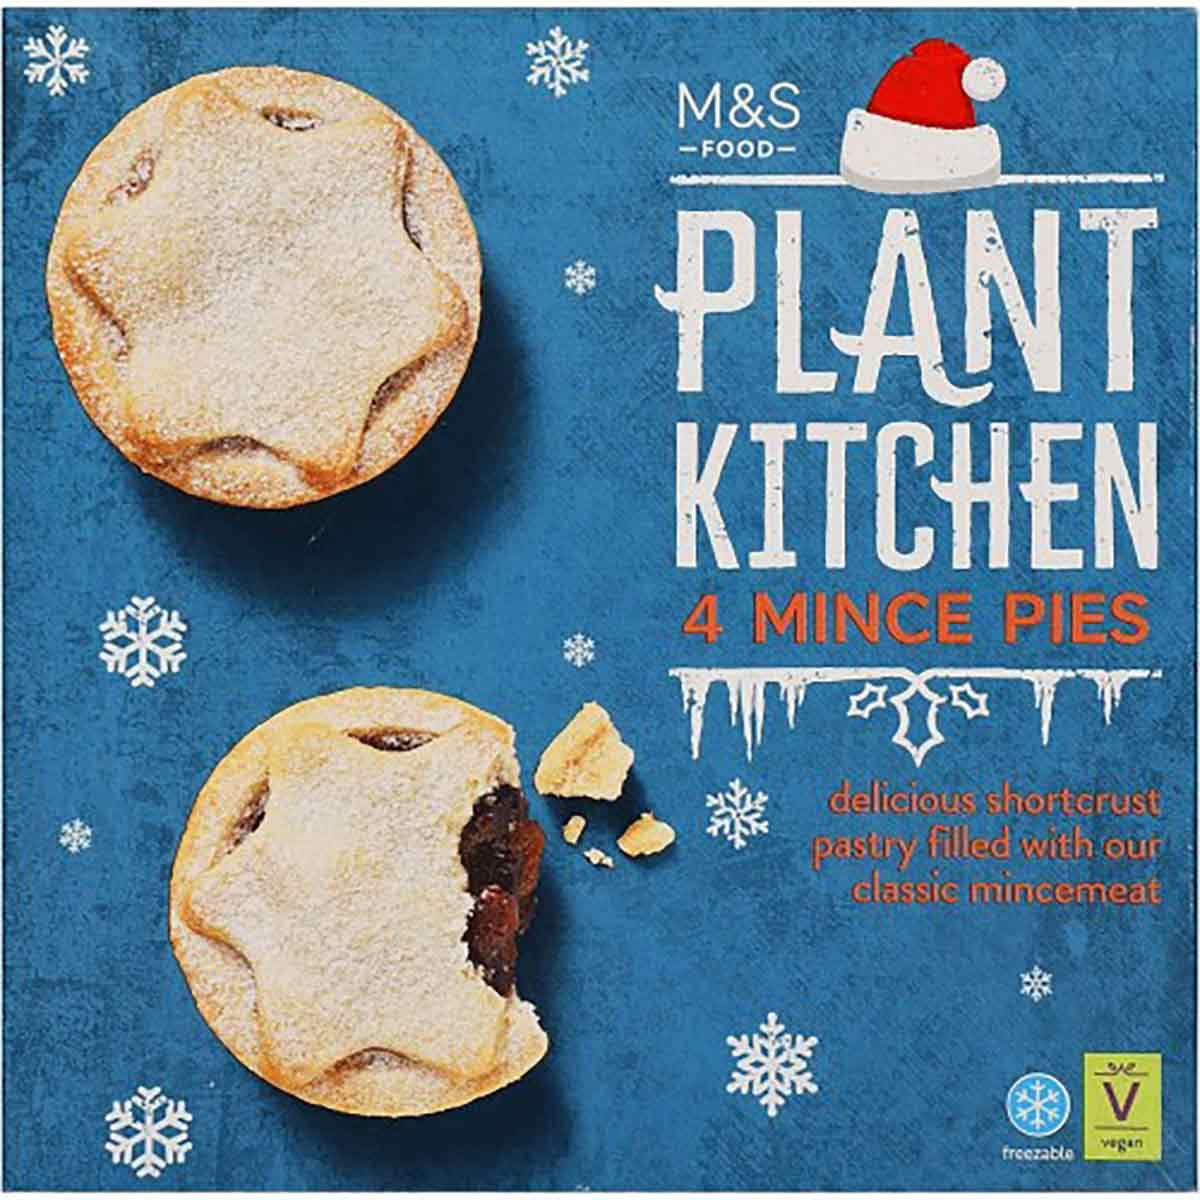 Plant Kitchen M&s Mince Pies